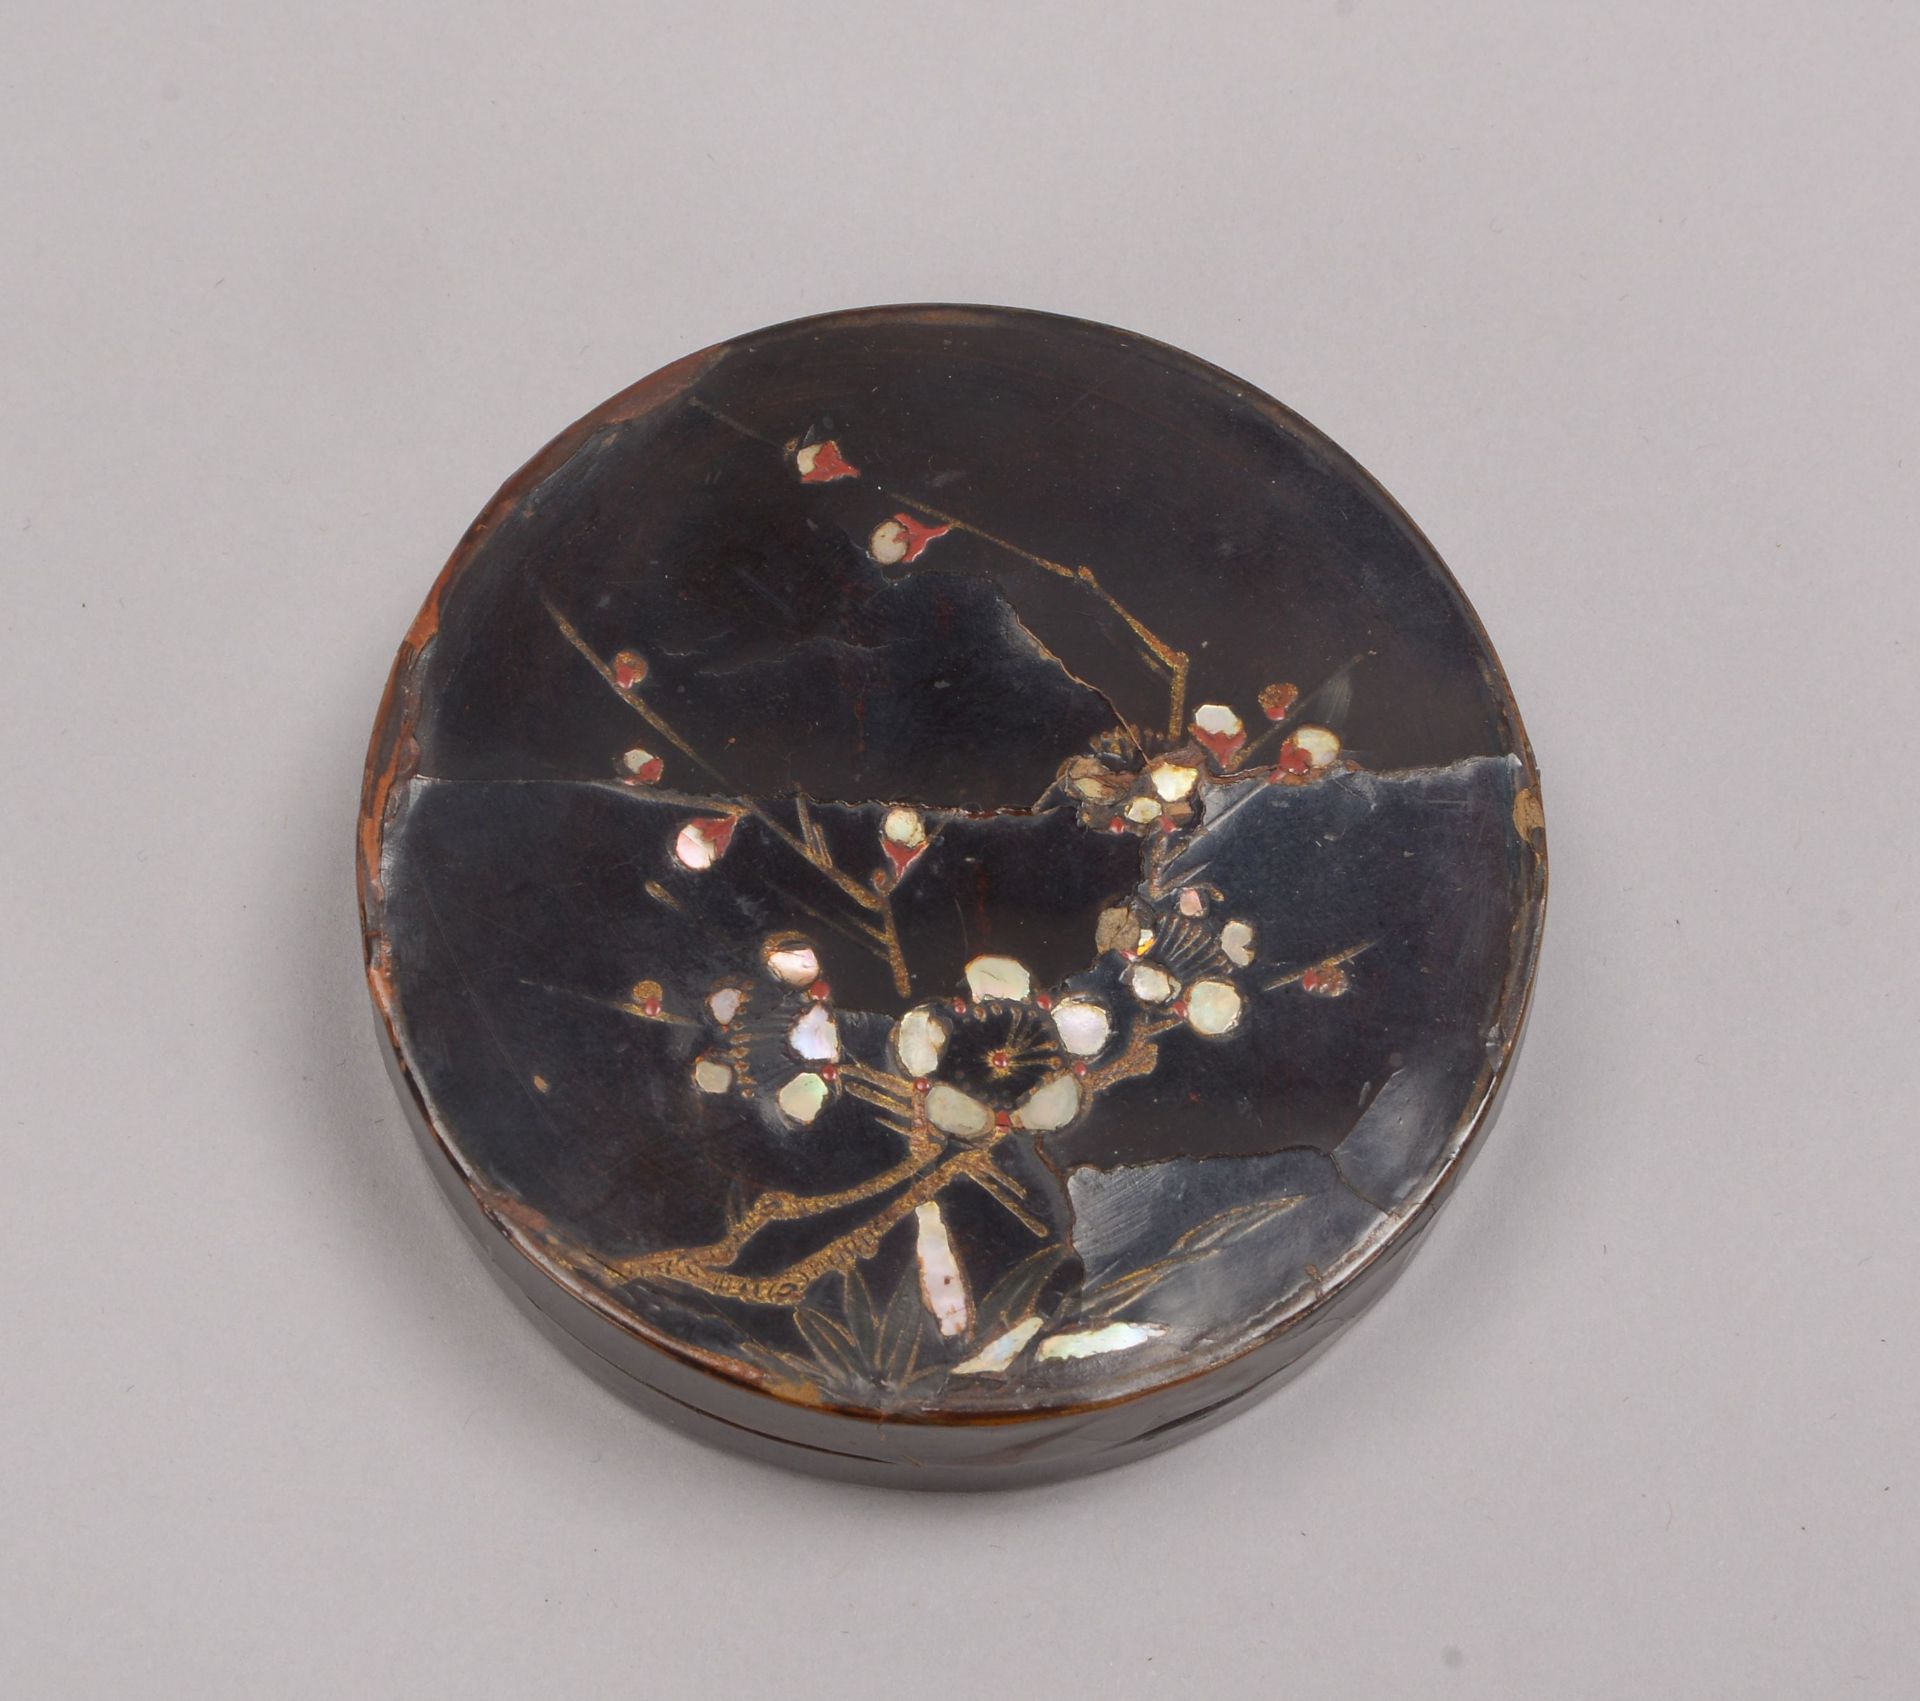 Lackdose/Kogo (Japan, wohl 17./18. Jahrhundert), runde Form, Dose mit Braunlack und Perlmutt-Einlage